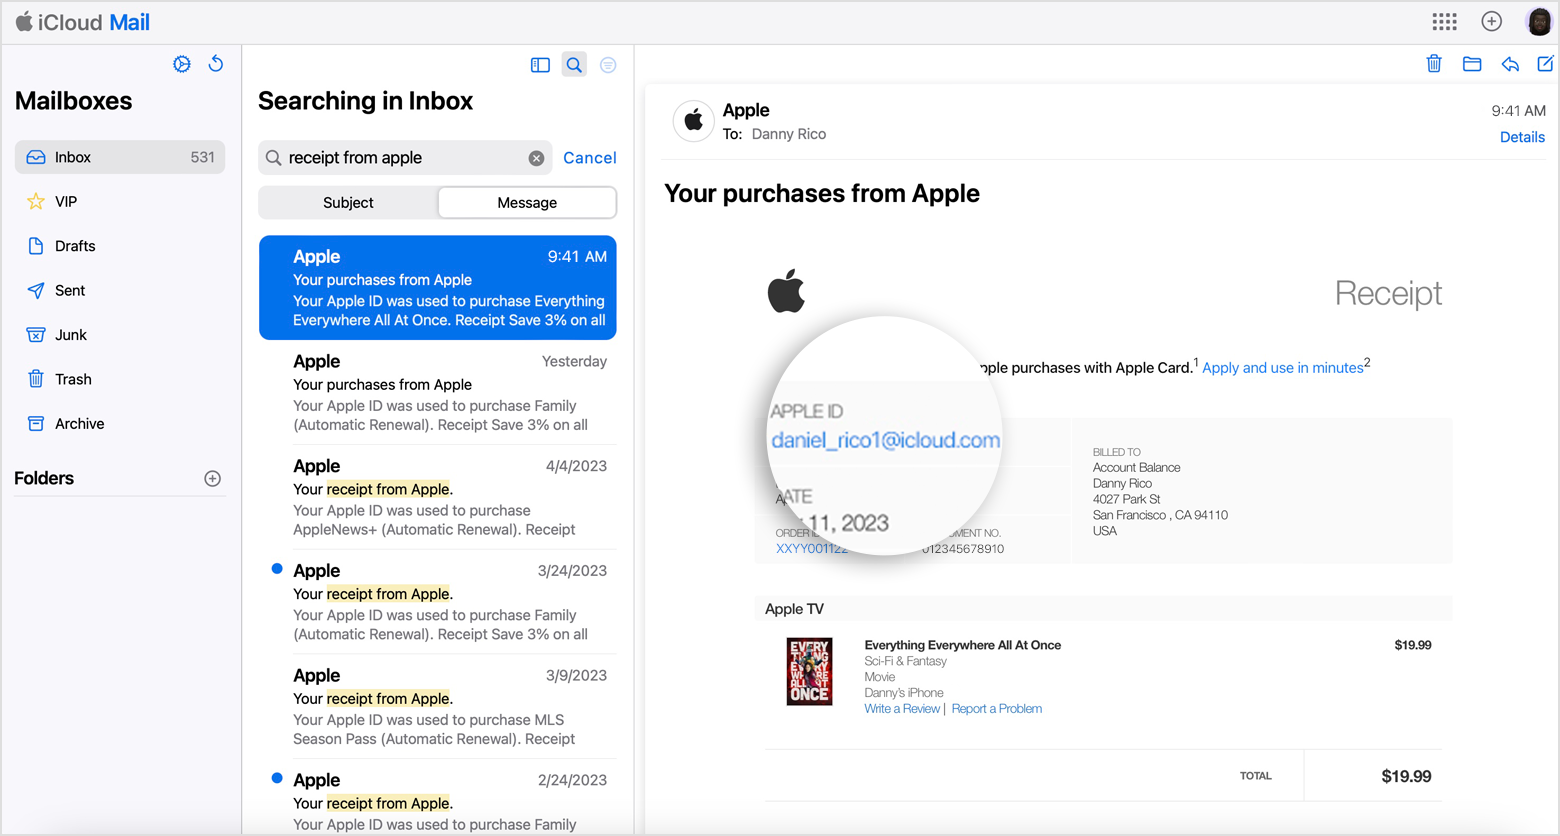 Courriel montrant le reçu Apple qui comprend l’identifiant Apple de la personne qui a effectué l’achat.